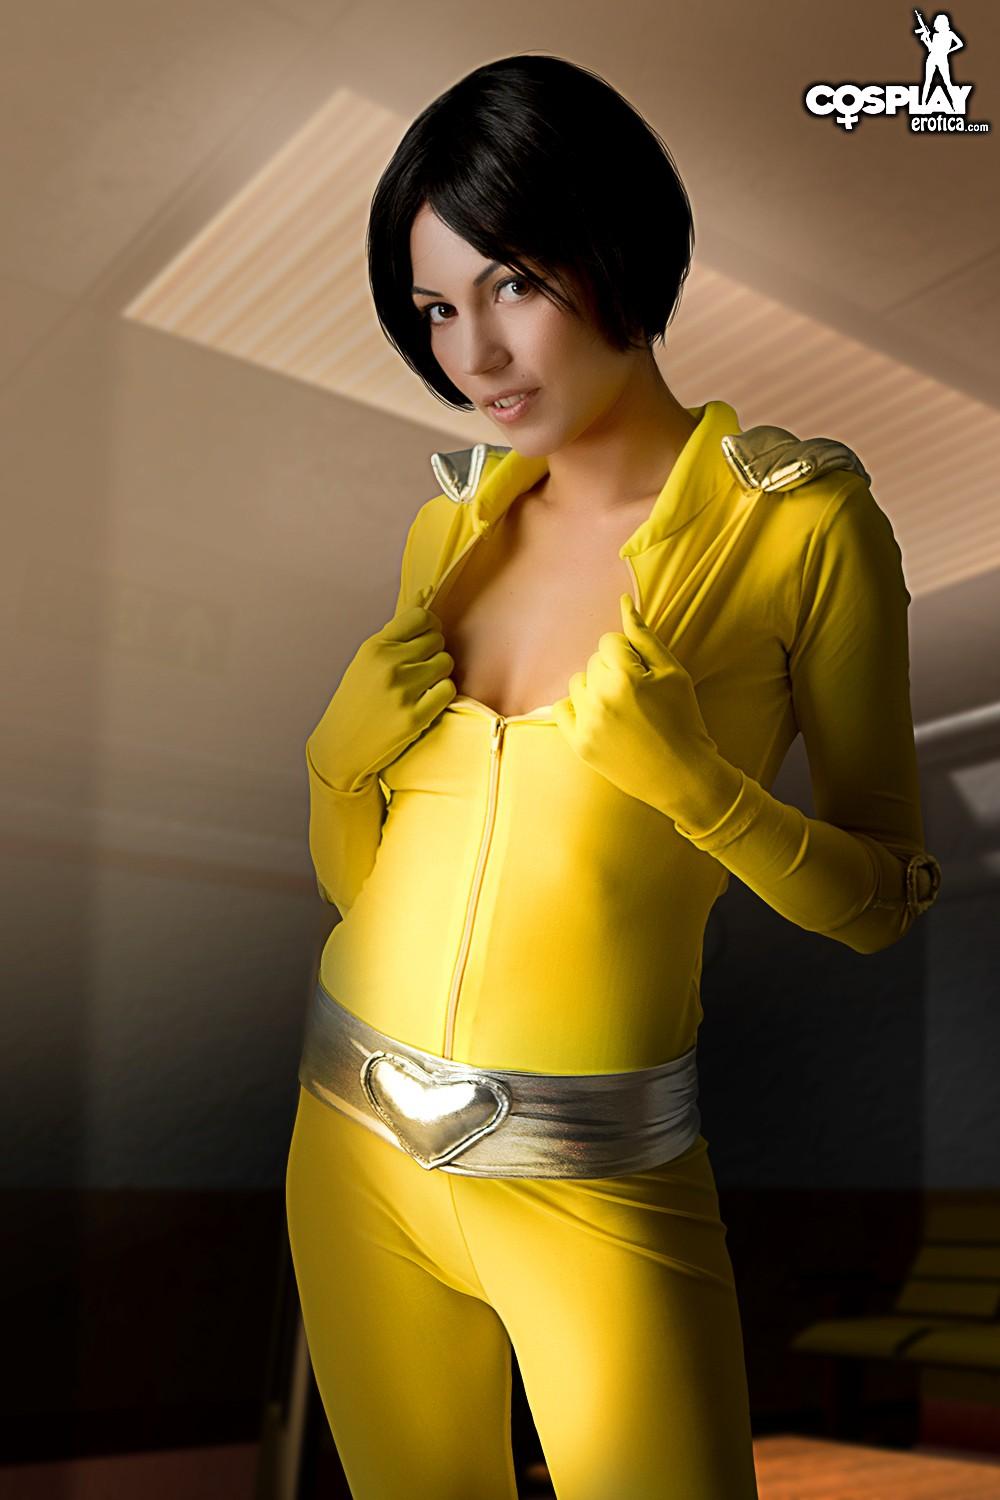 Hot cosplayer Devorah exposes her tight body in "Whoop" #54047285